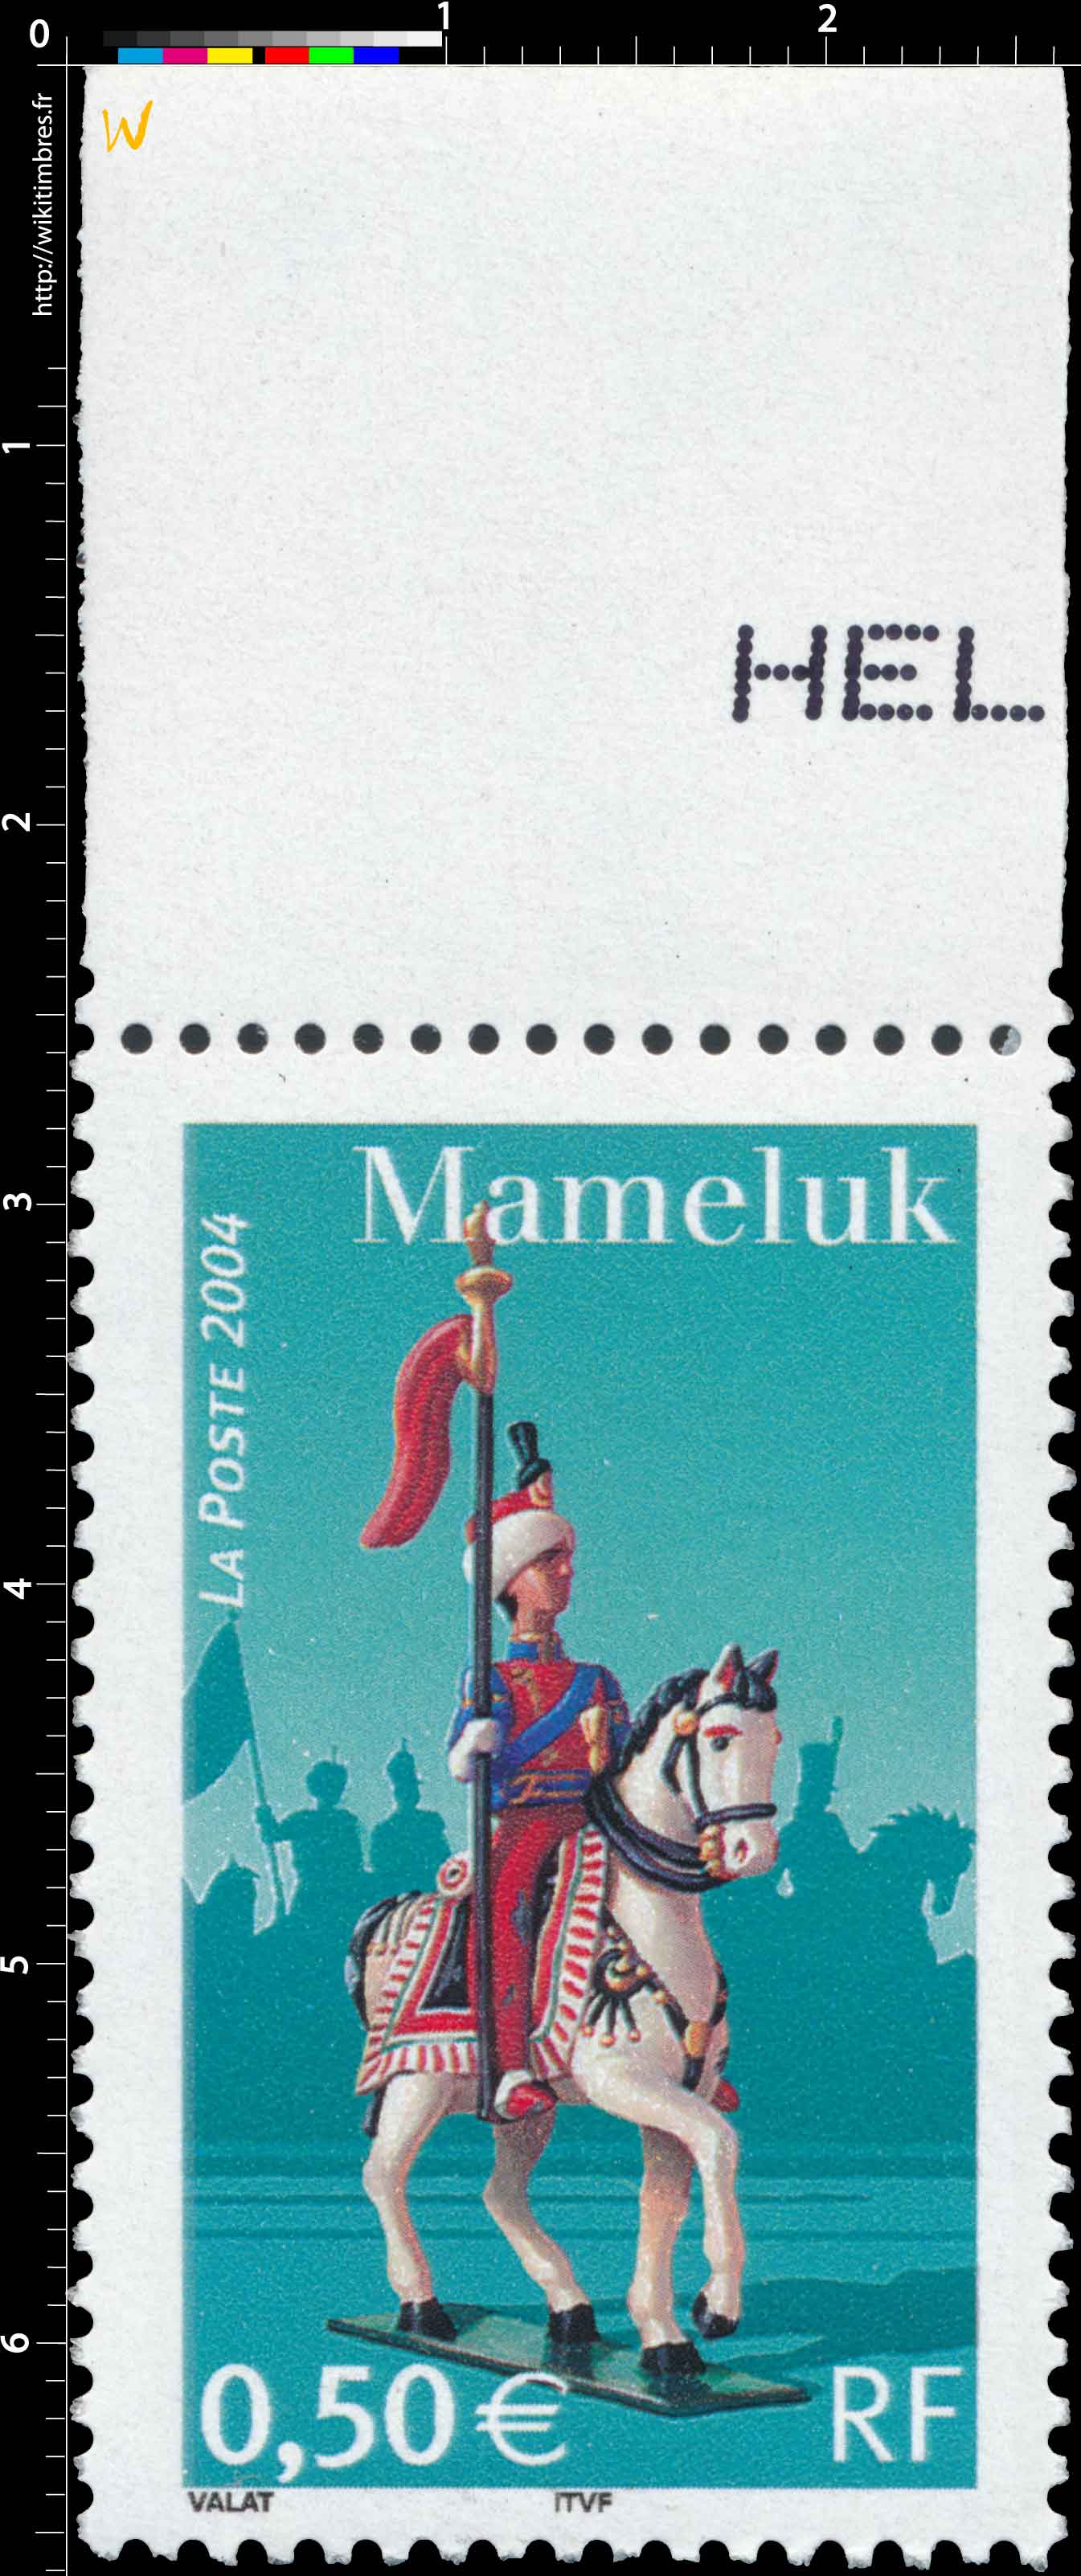 2004 Mameluk